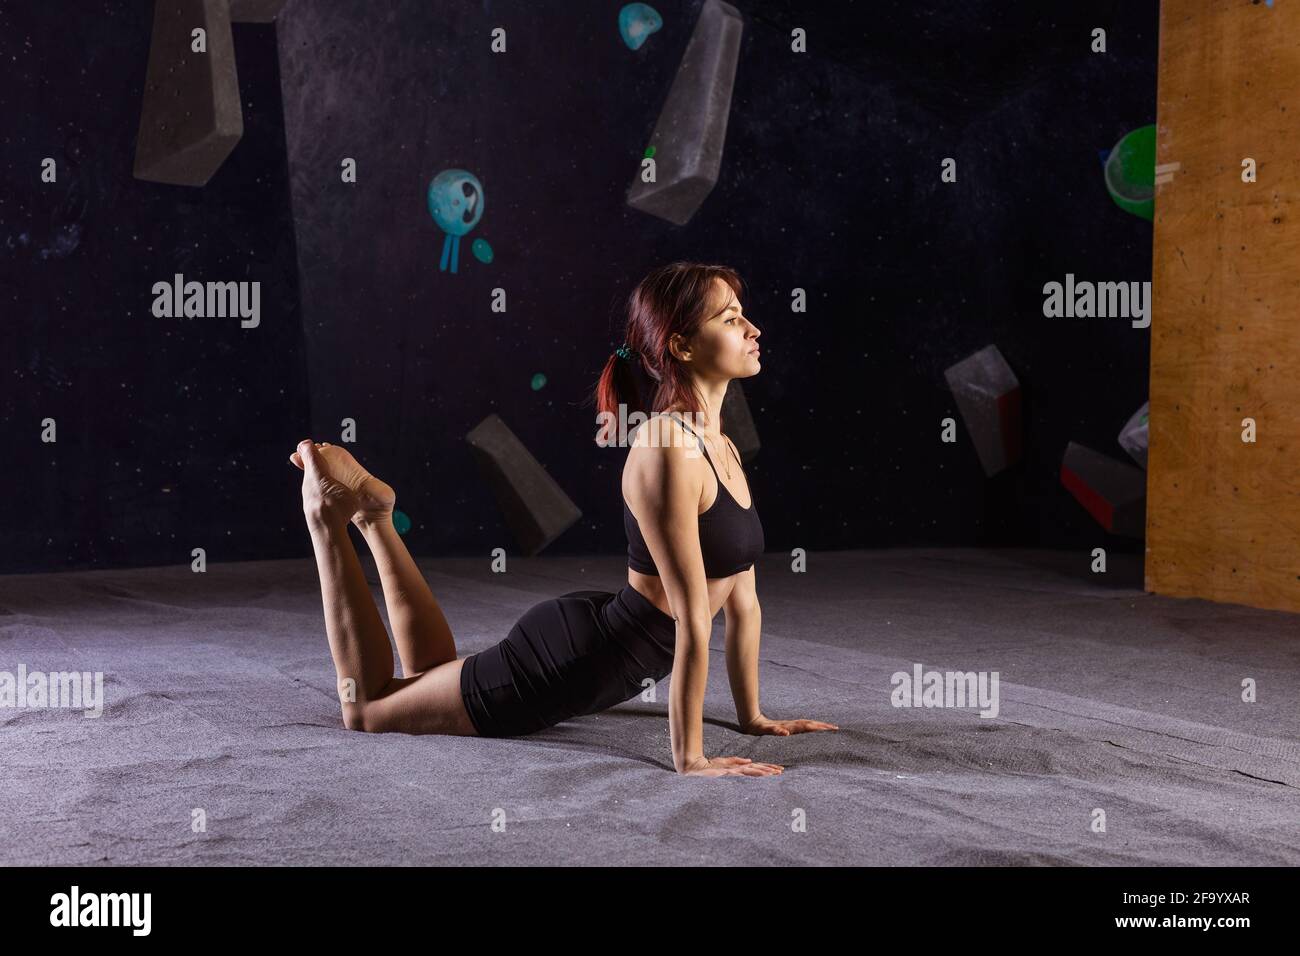 Eine athletische junge Frau, die in der Kletterhalle Yoga praktiziert und sich vor dem Bouldern aufwärmt Stockfoto